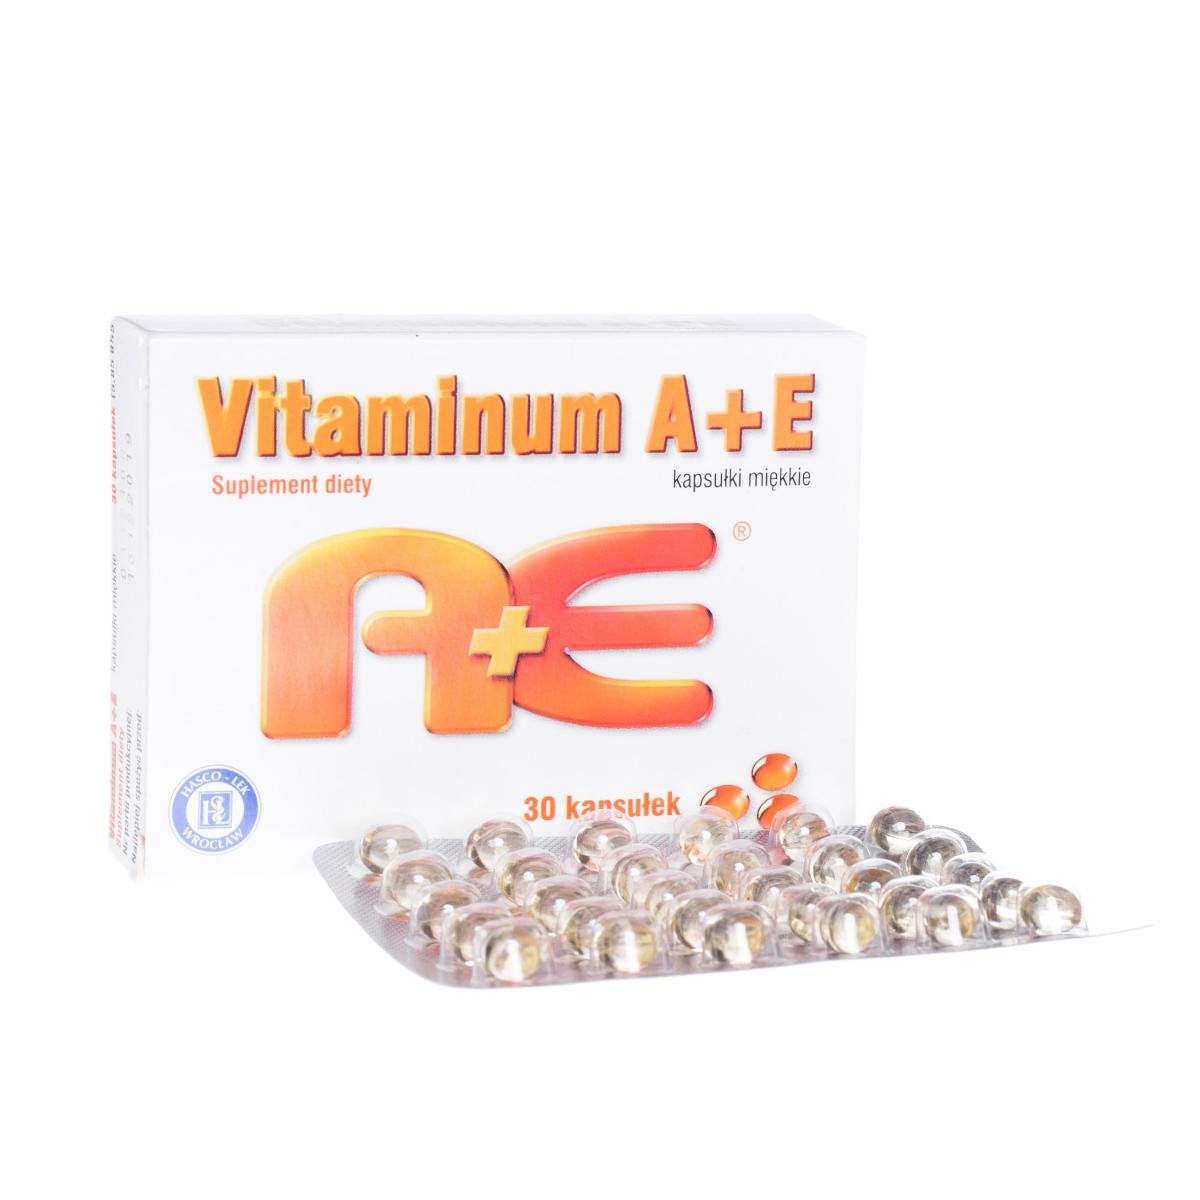 Hasco-Lek Vitaminum A+E x 30 kaps